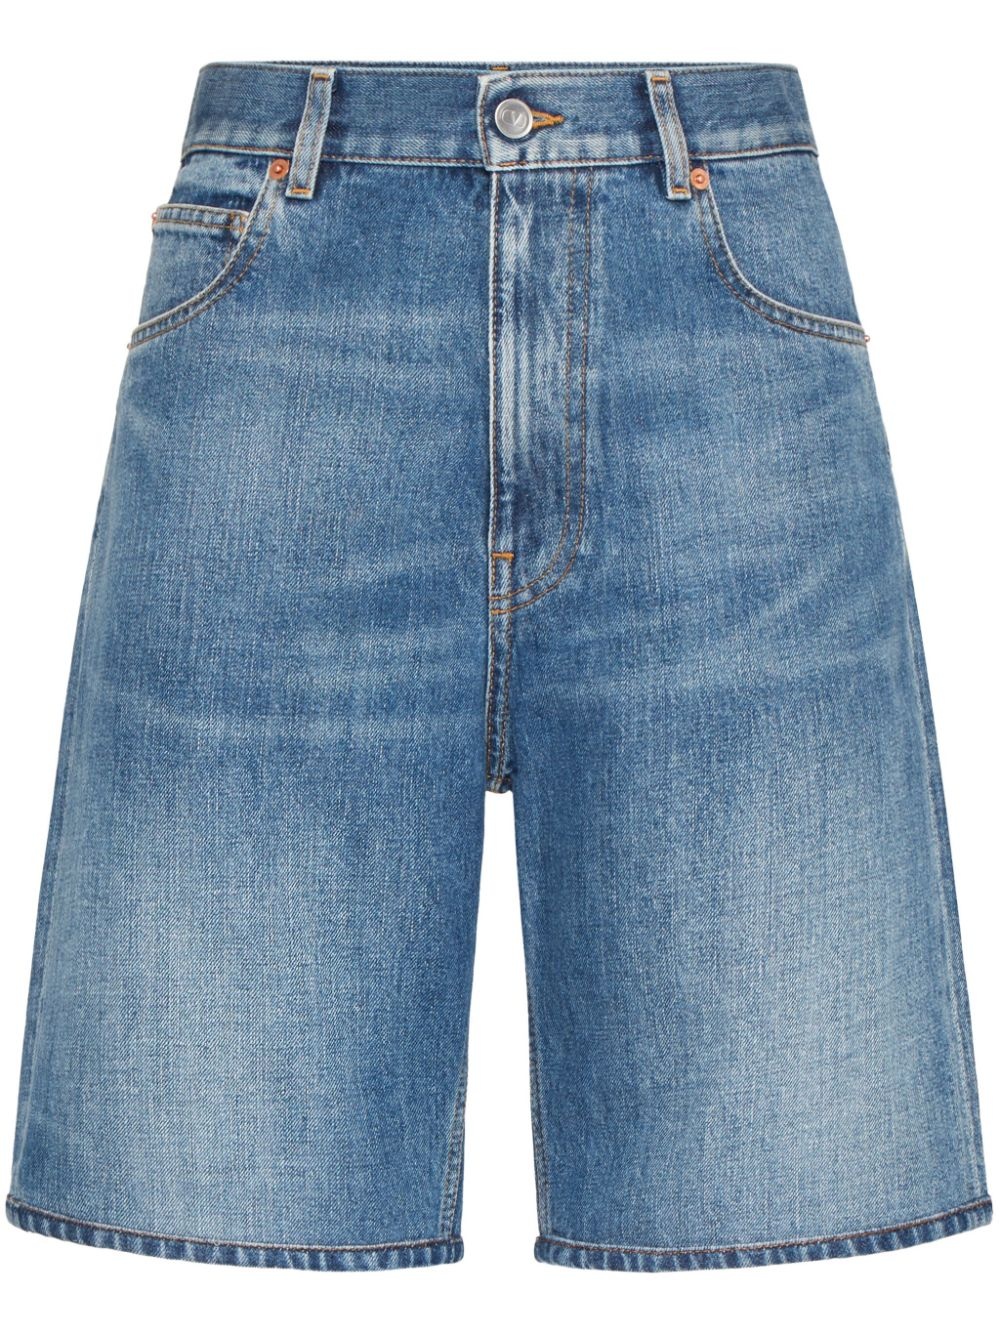 high-waisted denim shorts - 1